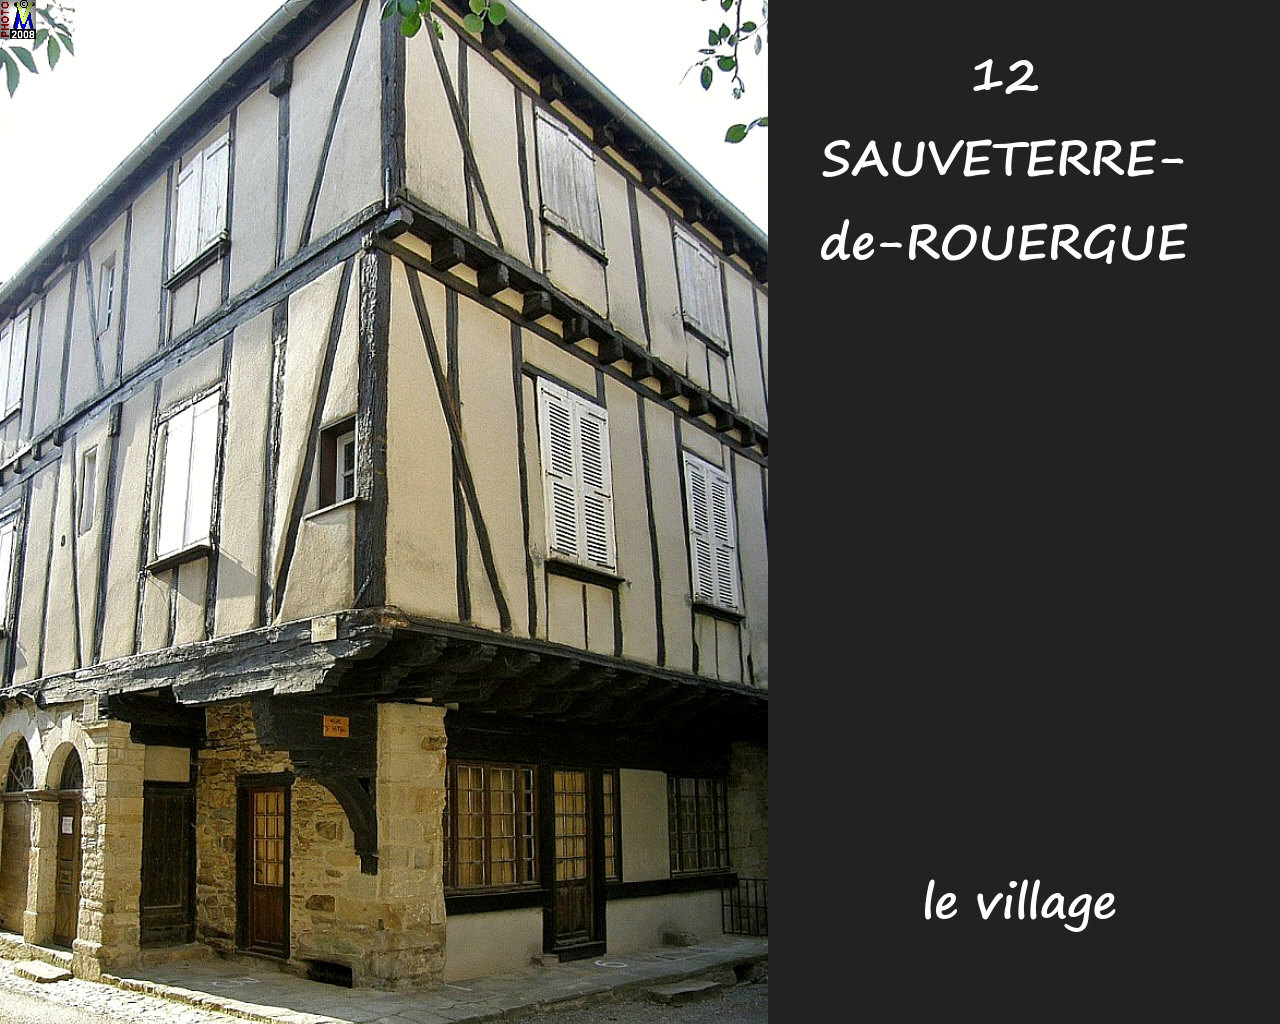 12SAUVETERRE-ROUERGUE_village_134.jpg